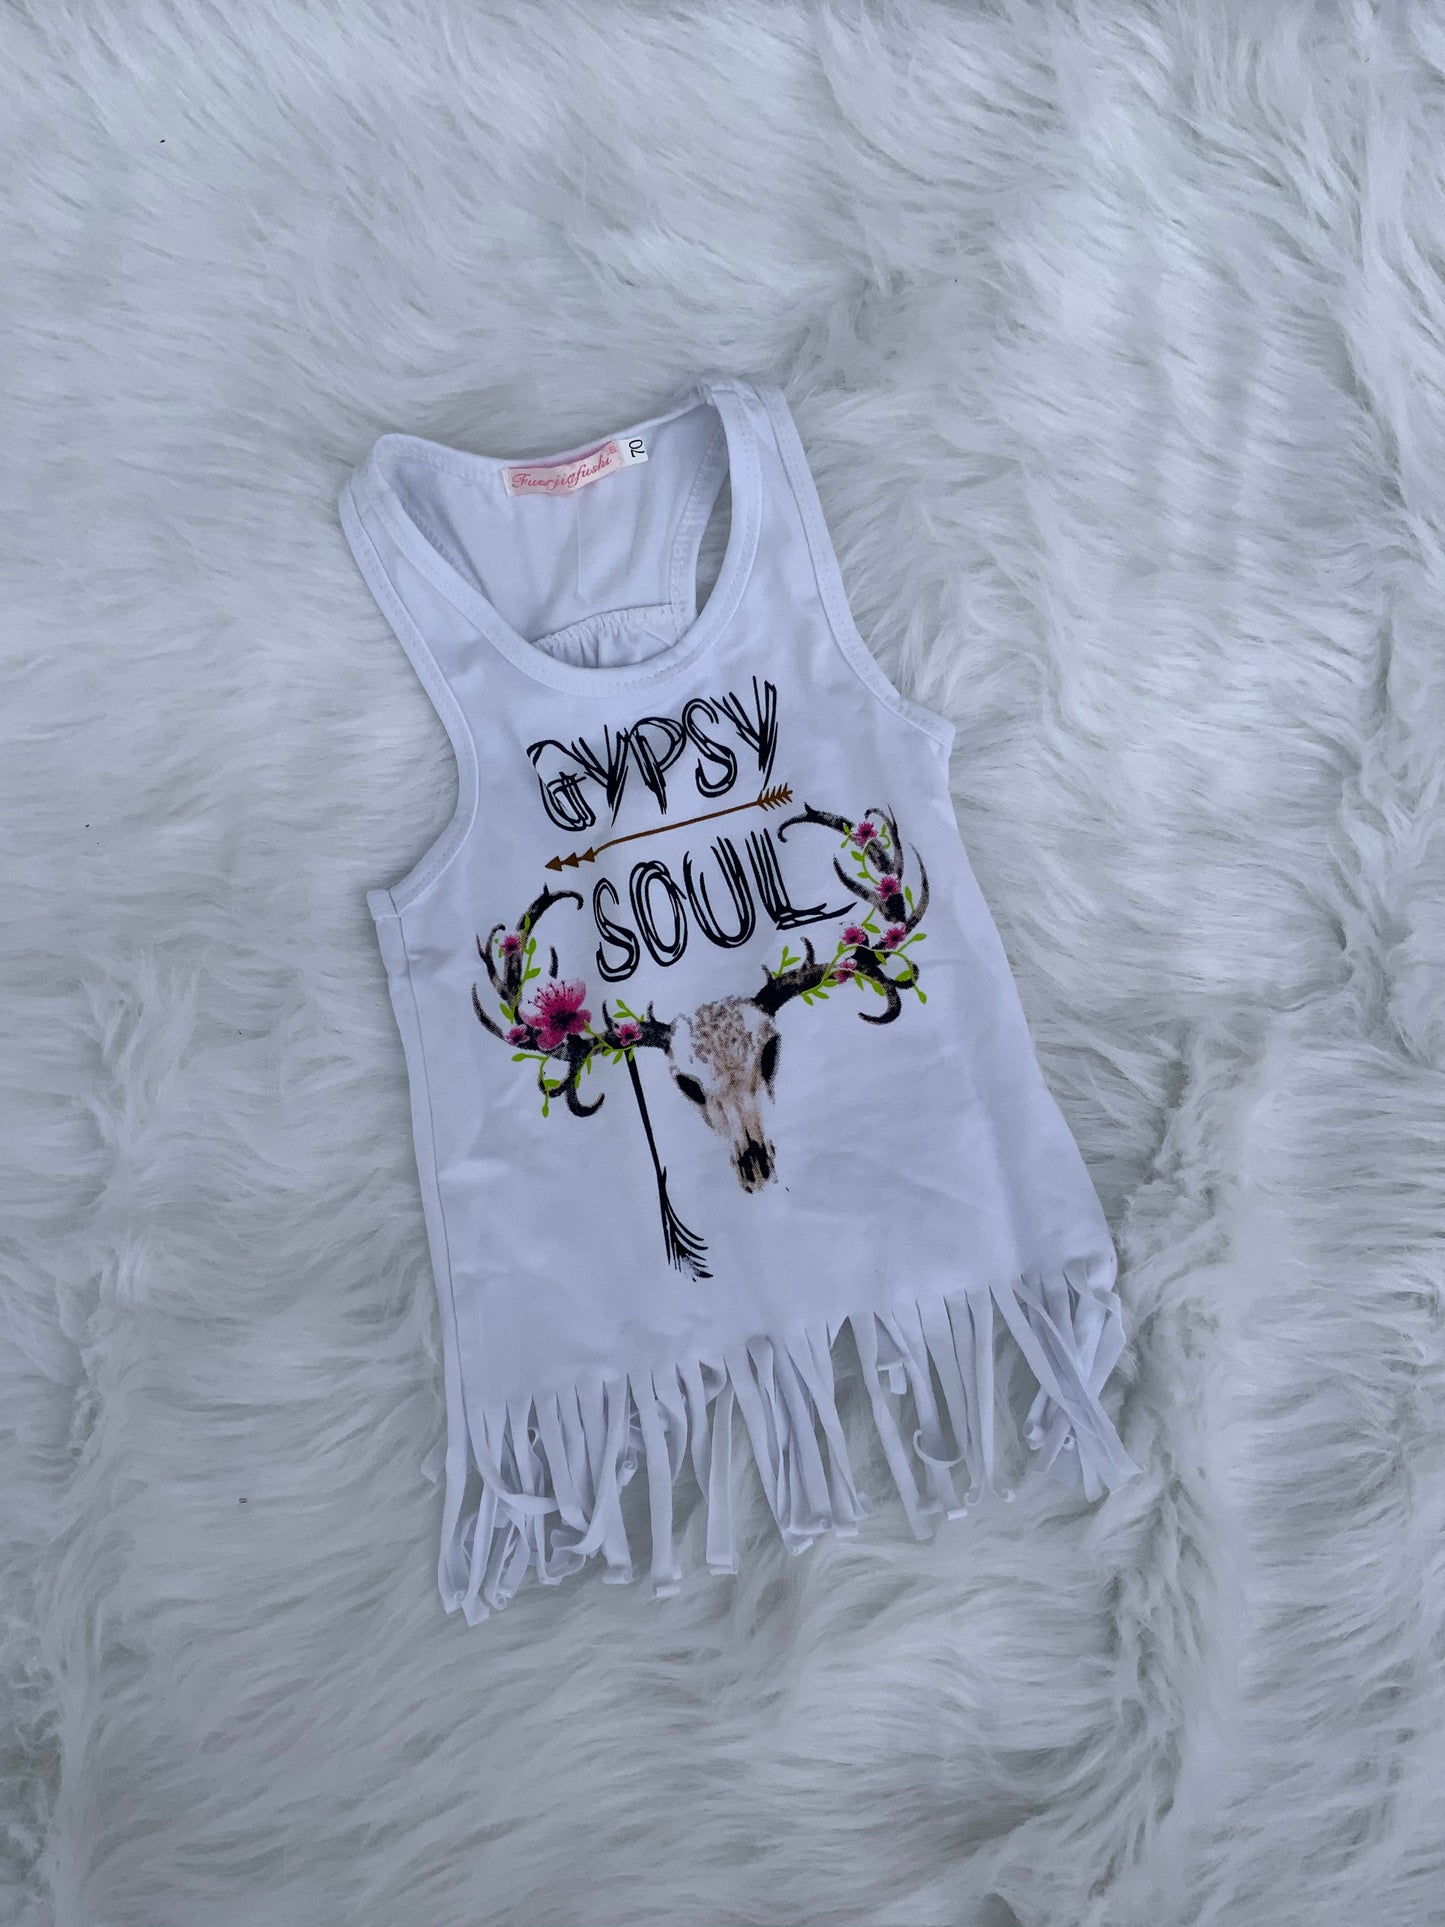 Gypsy Soul Fringed Shirt